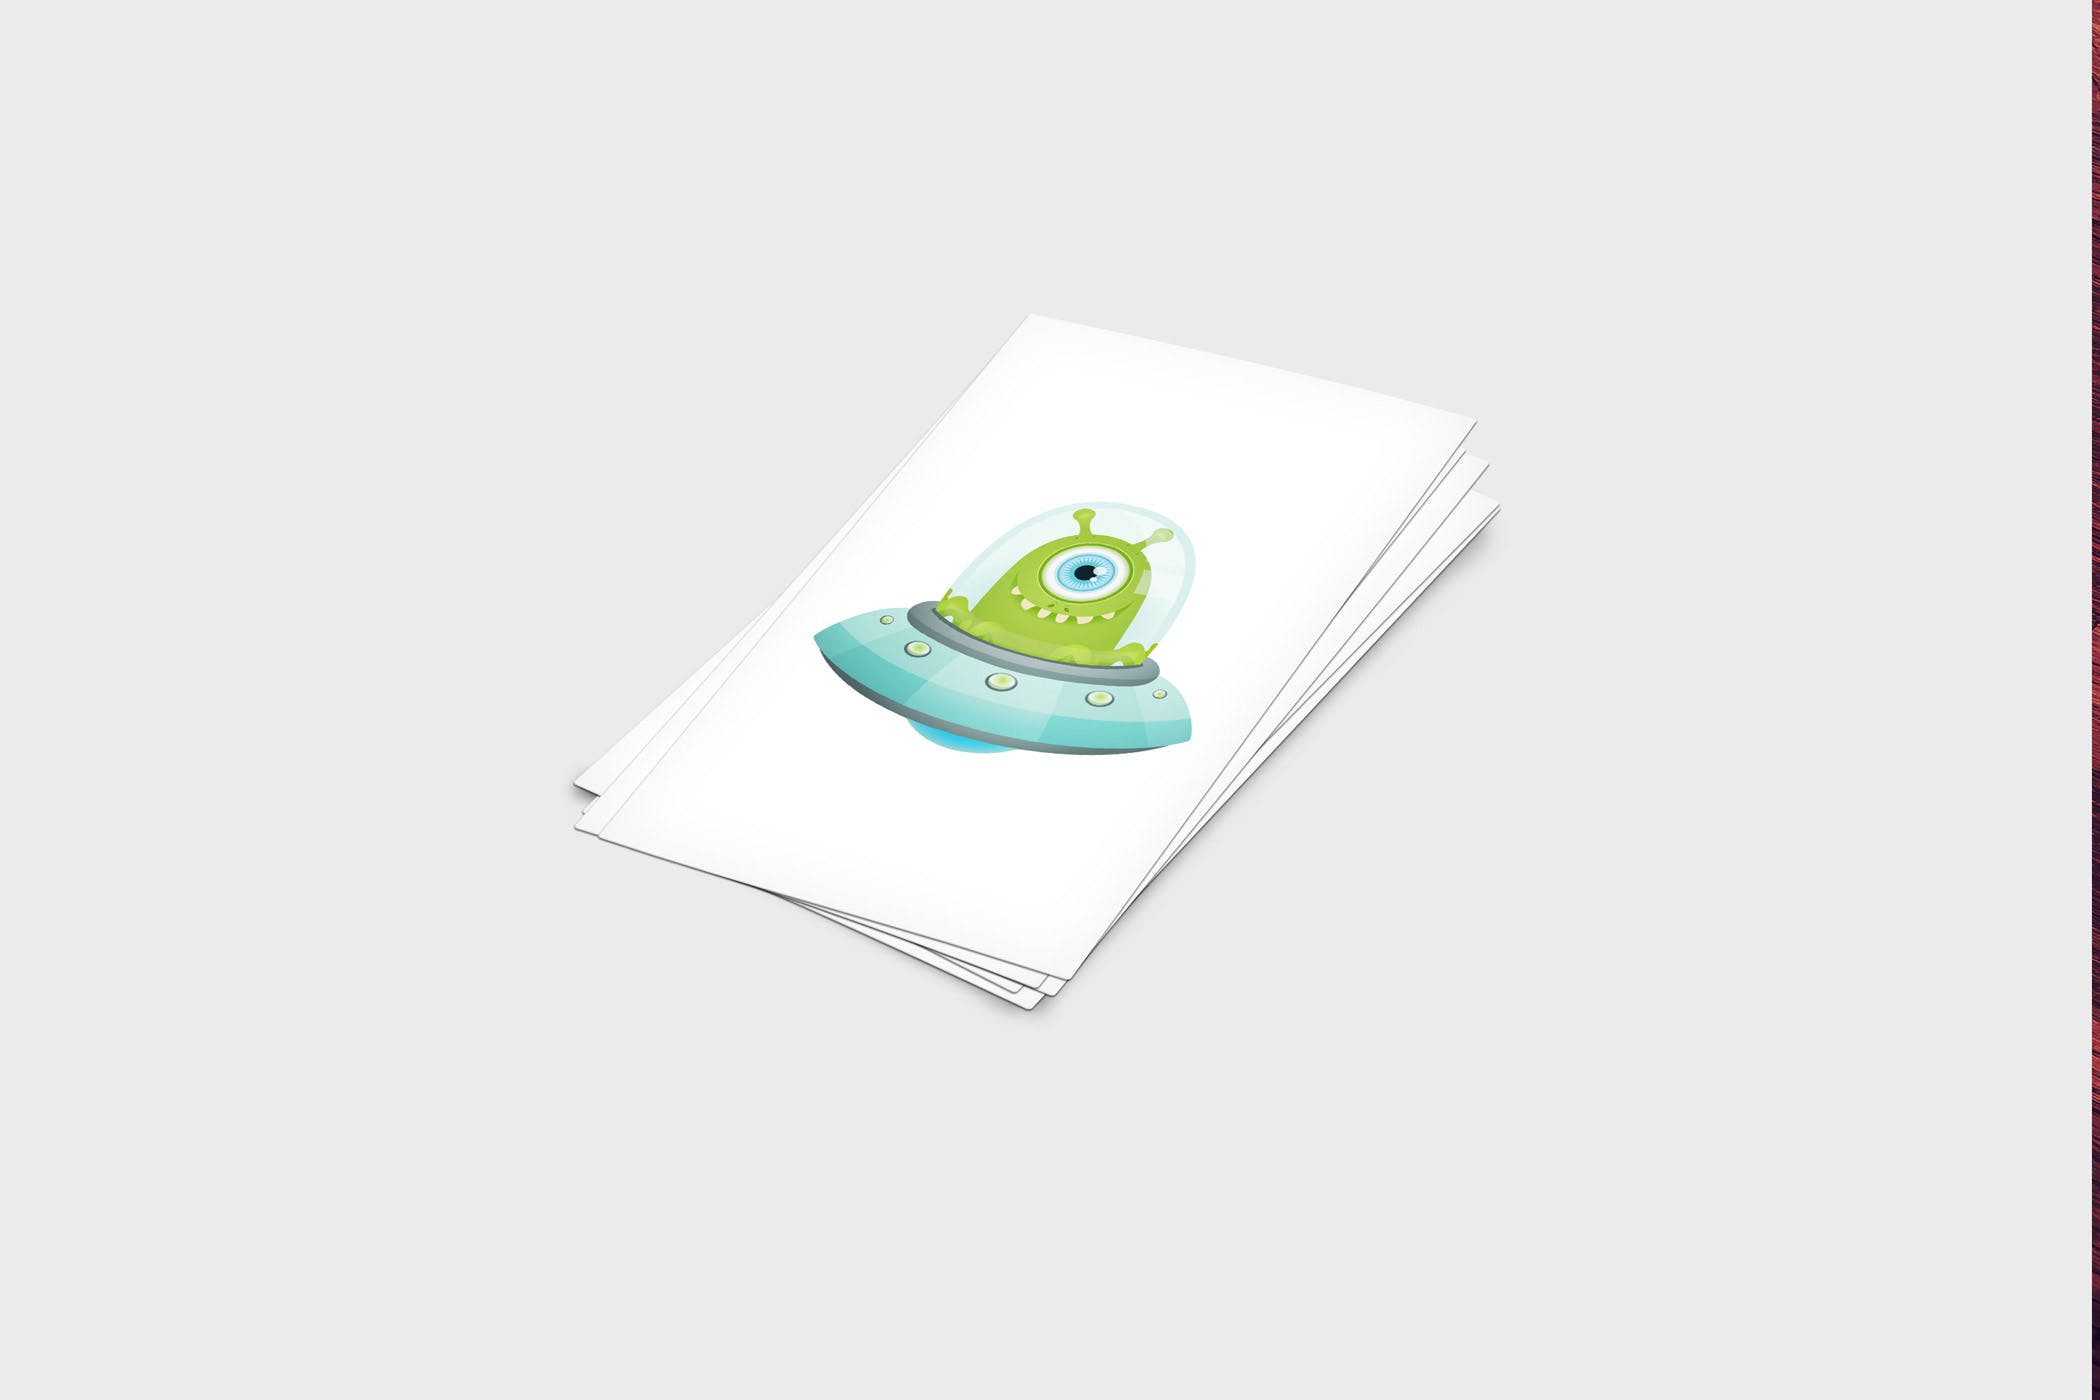 企业名片设计效果图展示样机素材库精选模板 4 Business Card Mock-Up Template插图(2)